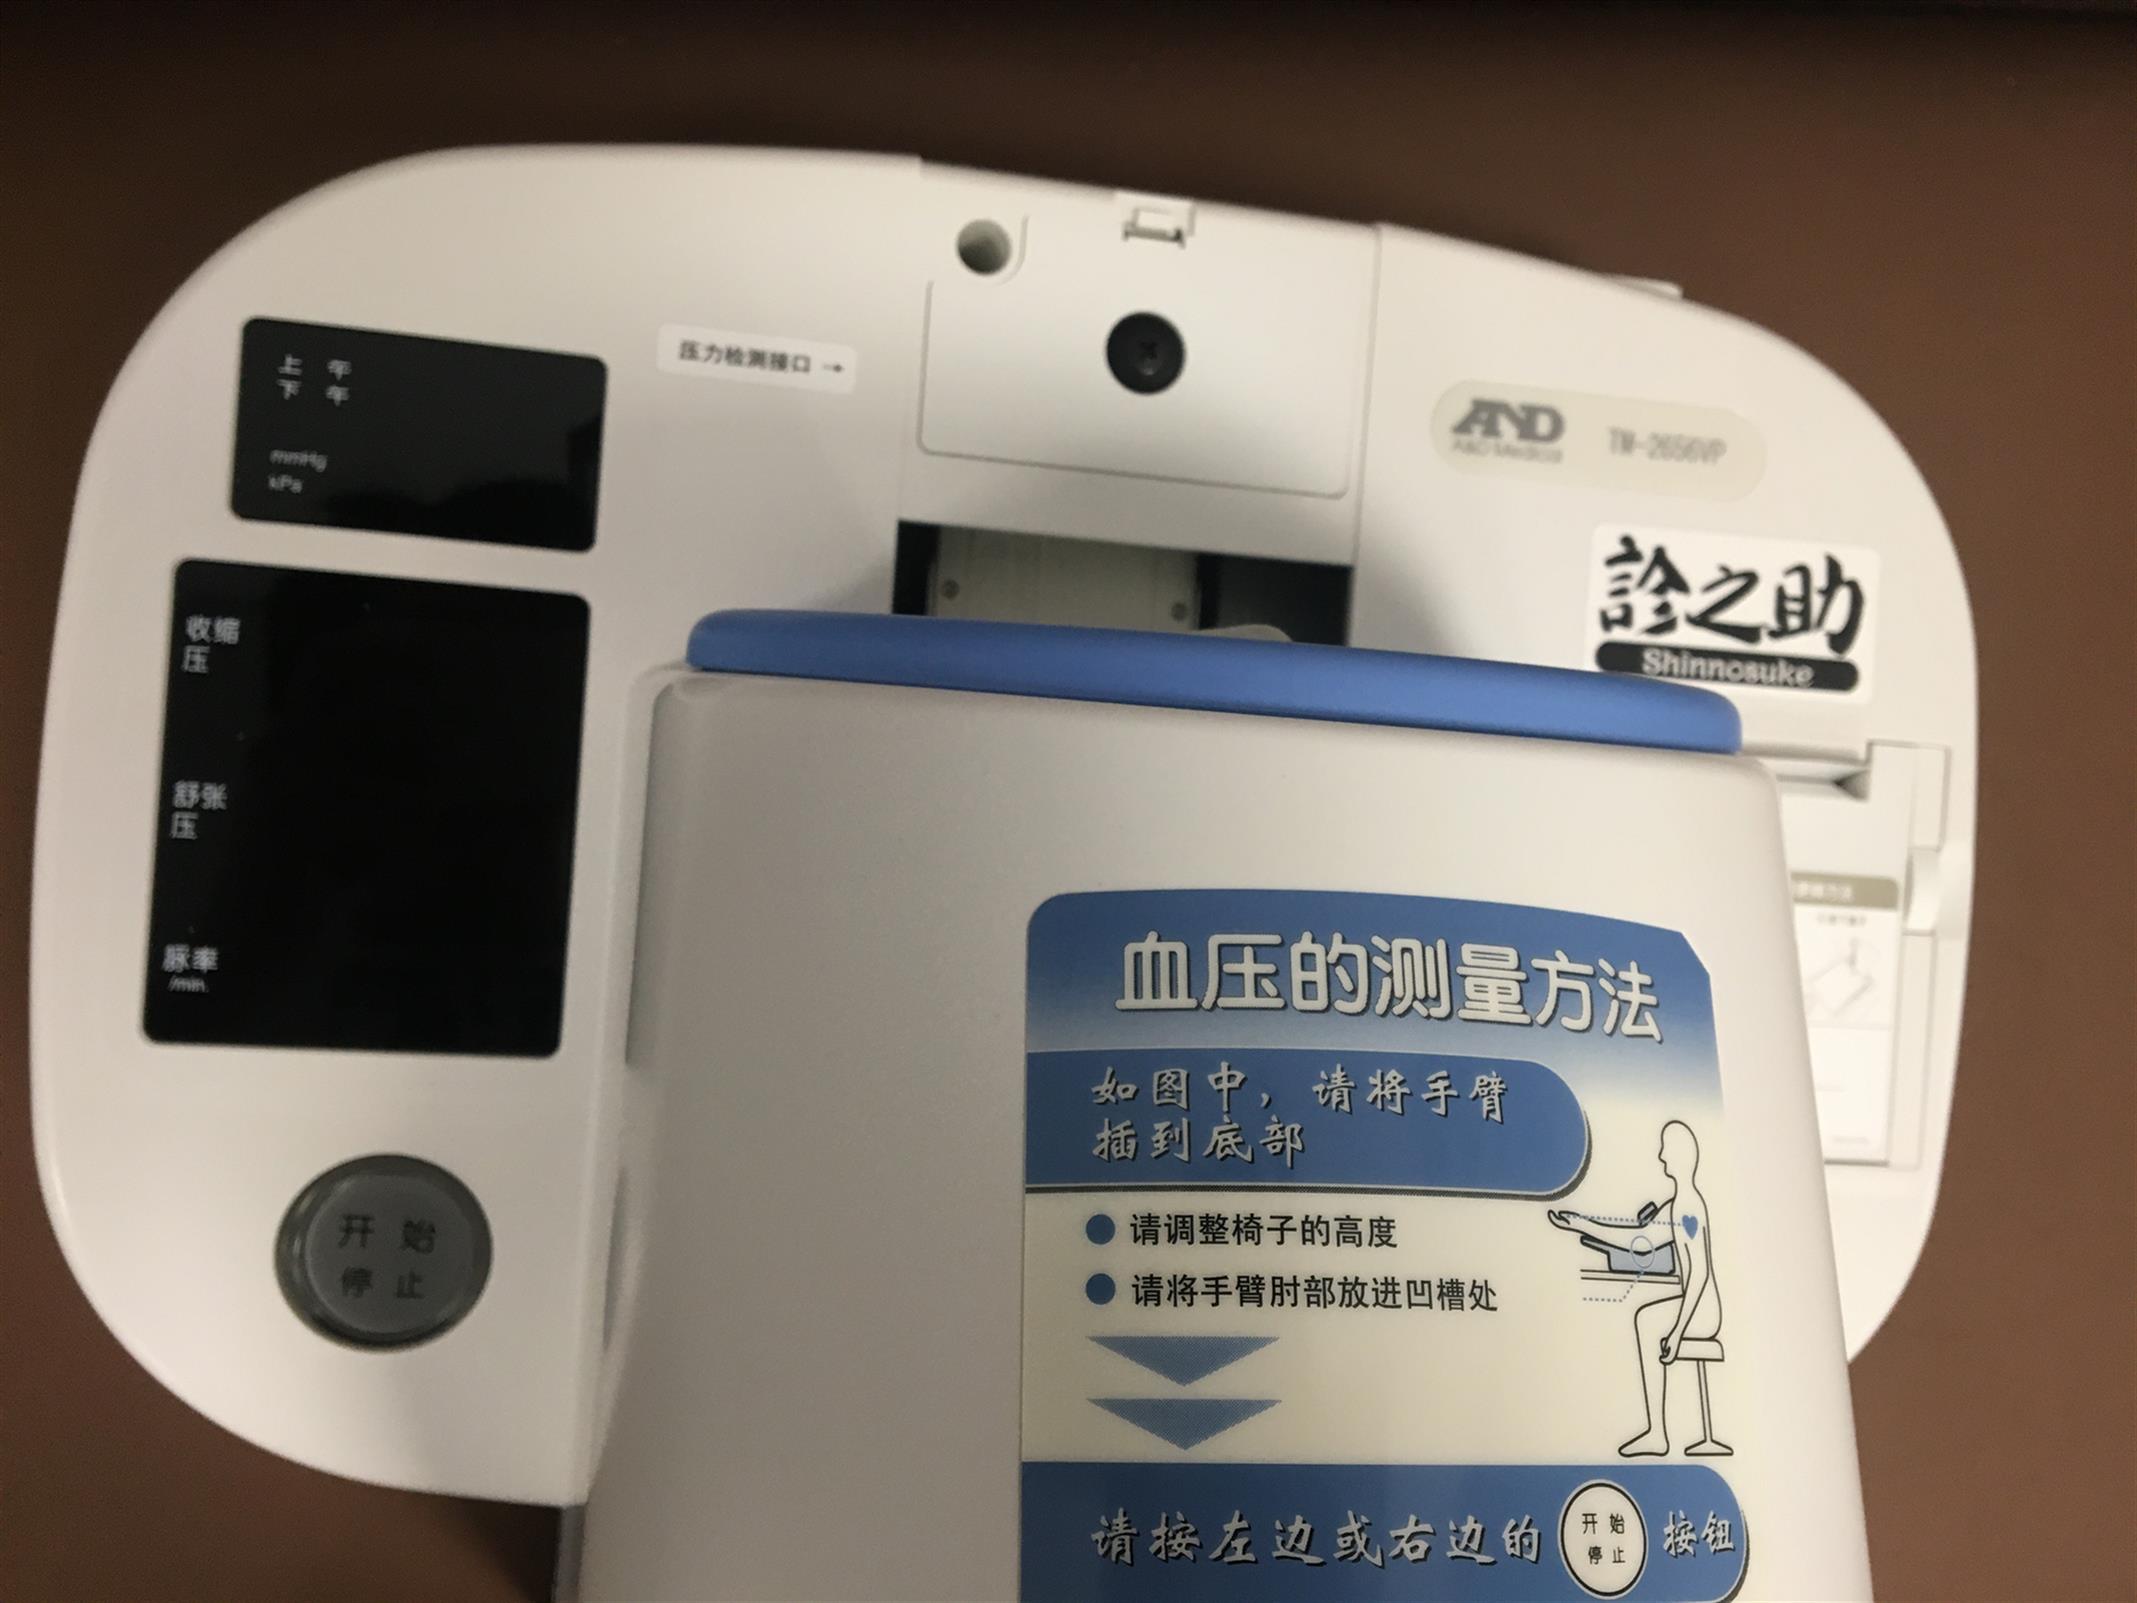 吉林TM-2656VP日本AND全自动血压计